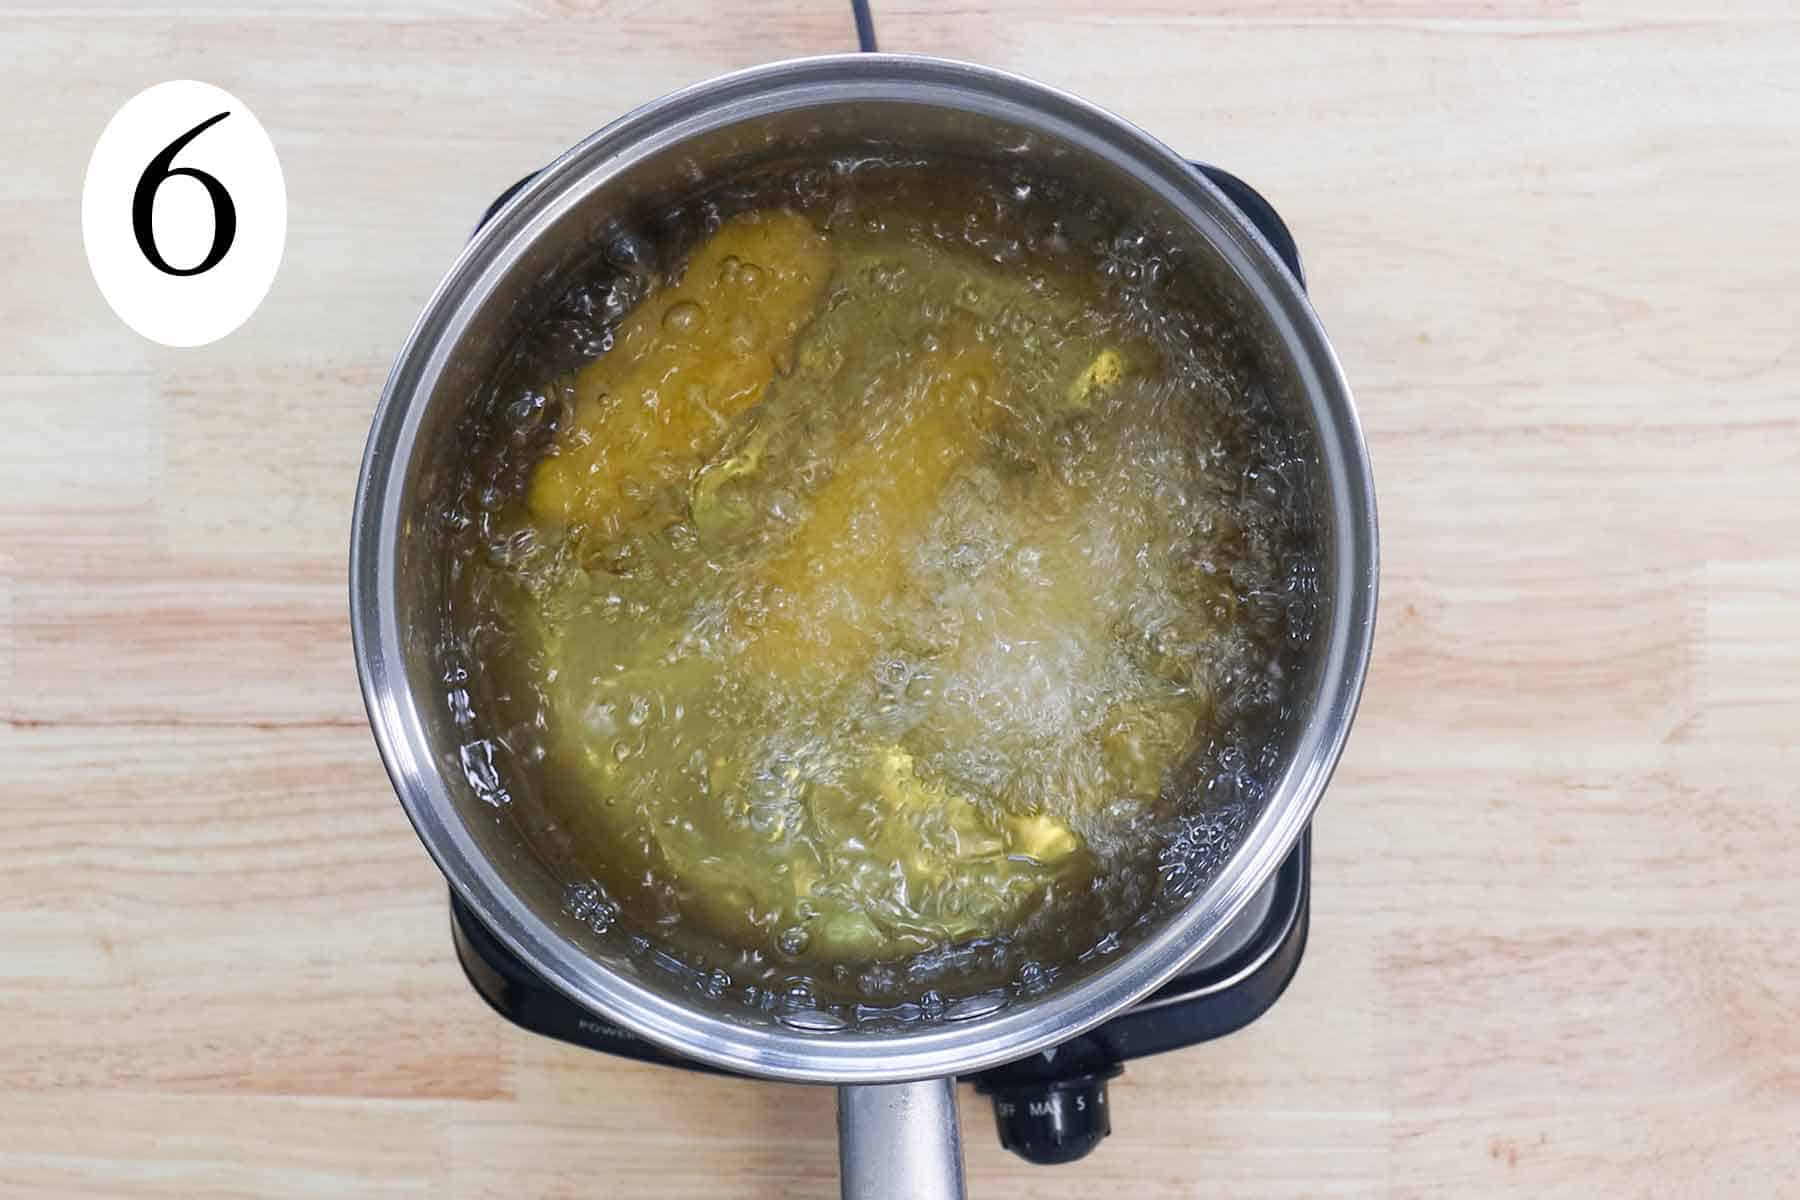 a big pot with frying sorullos.